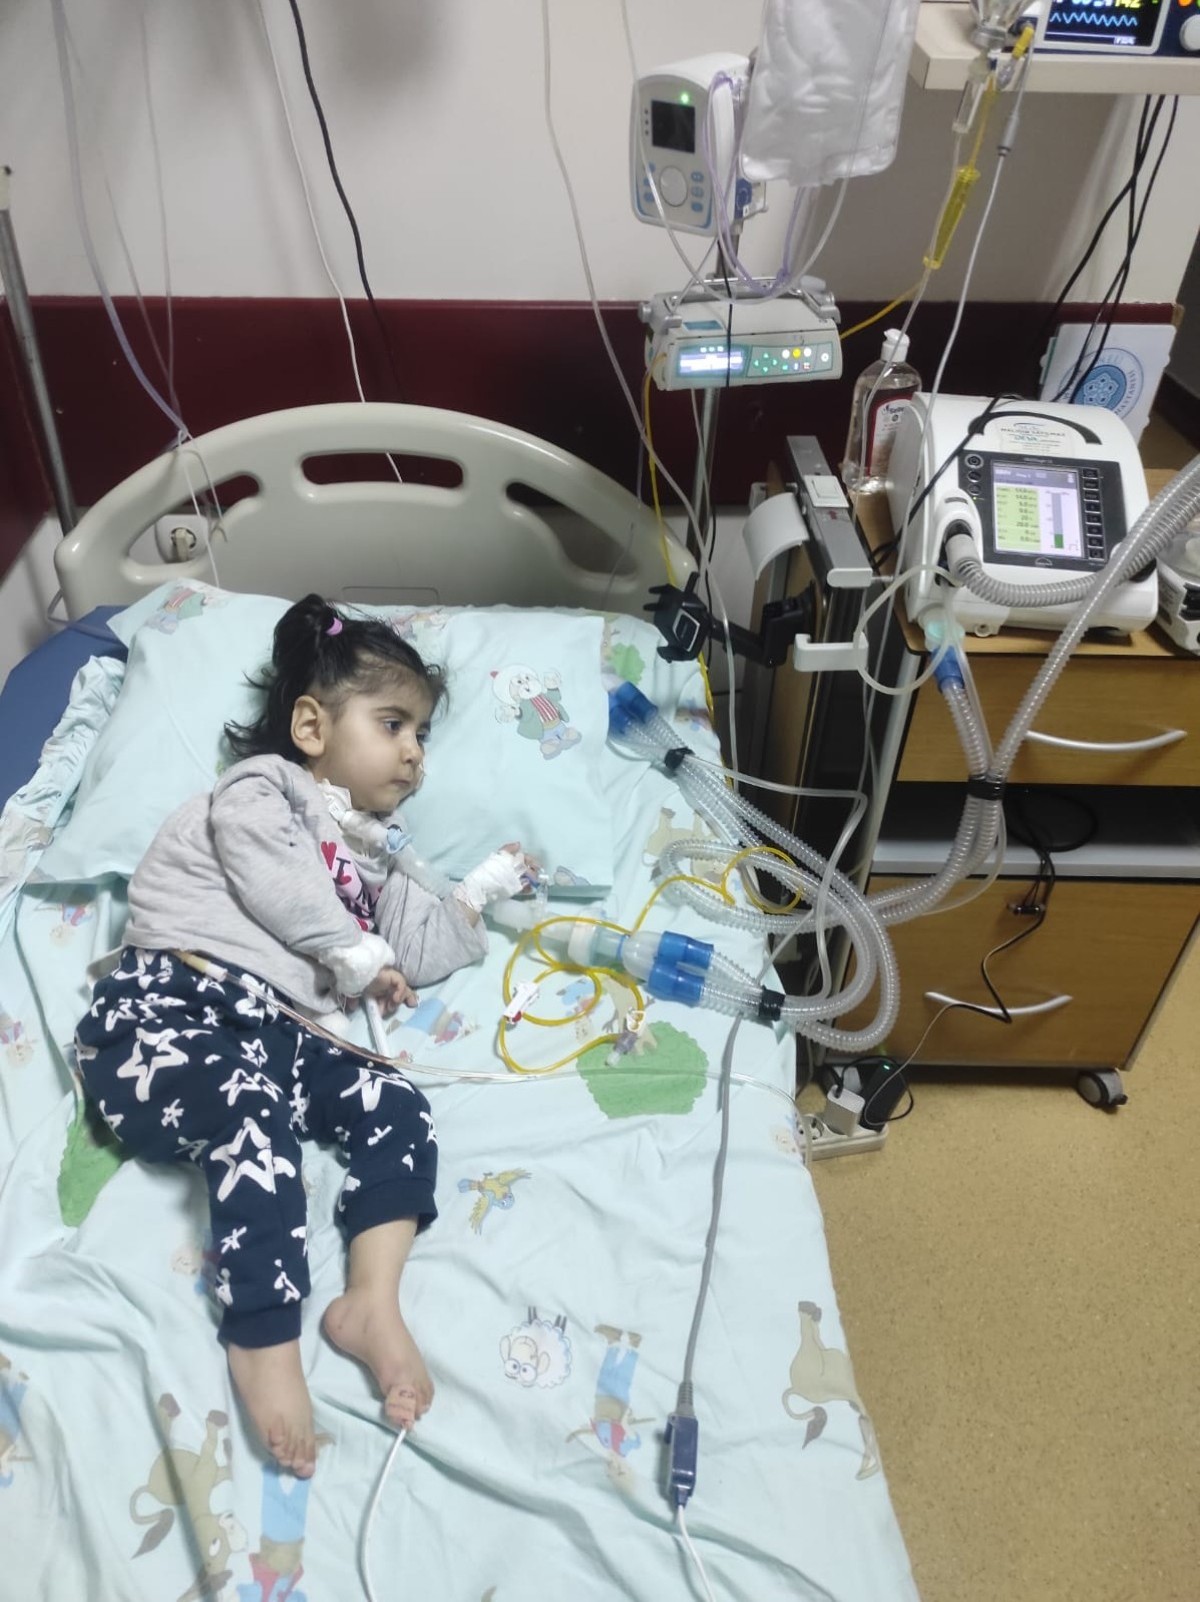 SMA hastası Konyalı Amine Hüma bebek, tedavi için yardımseverlerin desteğini bekliyor